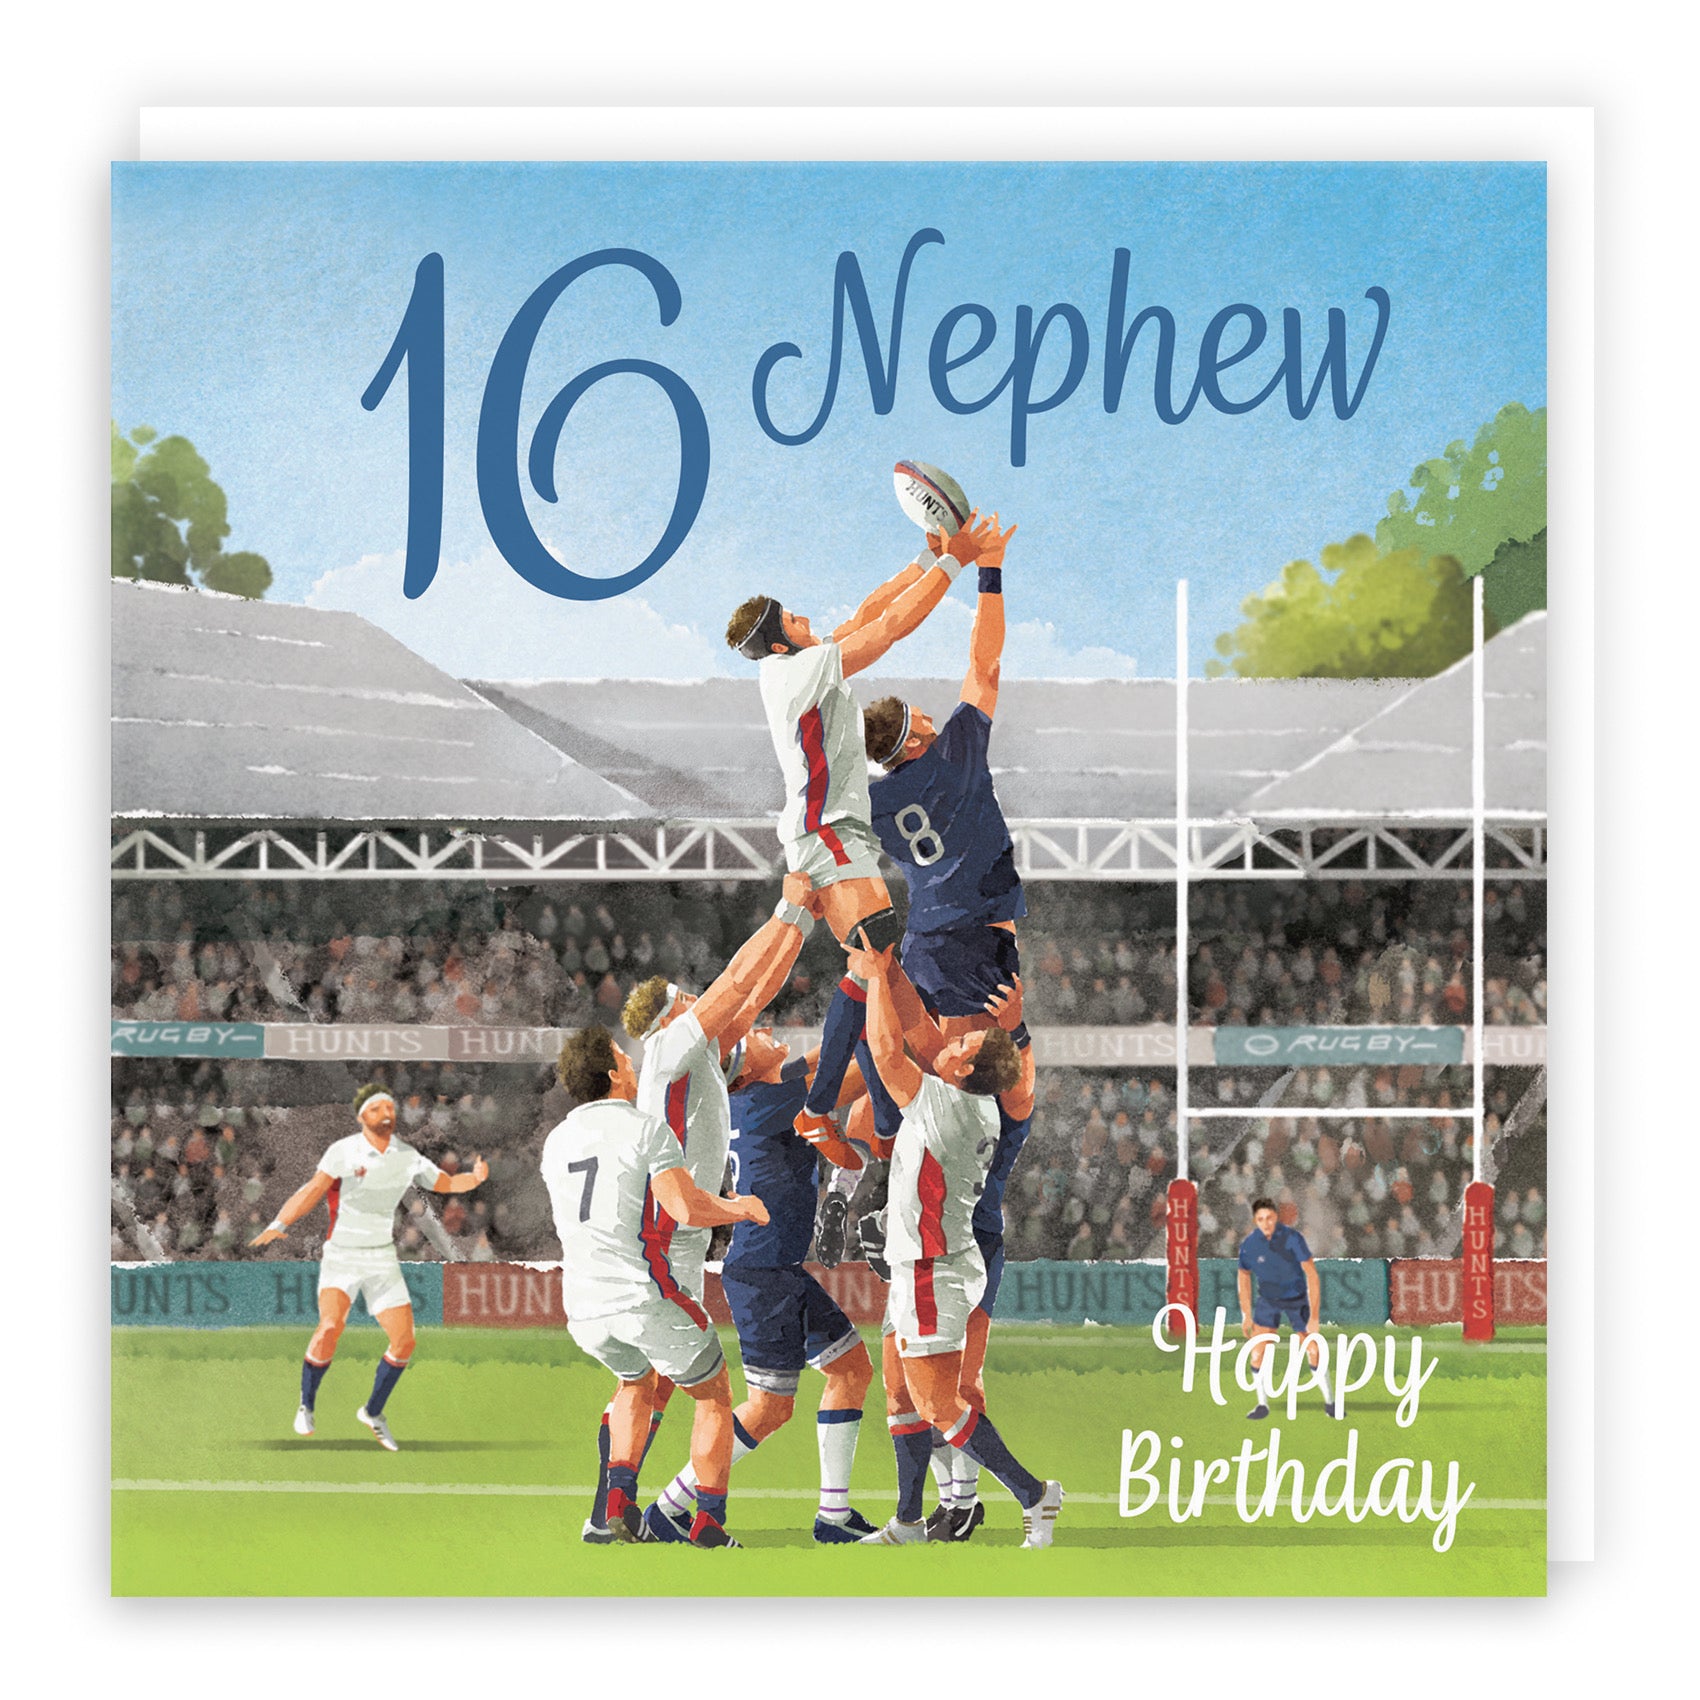 16th Nephew Rugby Birthday Card Milo's Gallery - Default Title (B0CPQWYR7L)